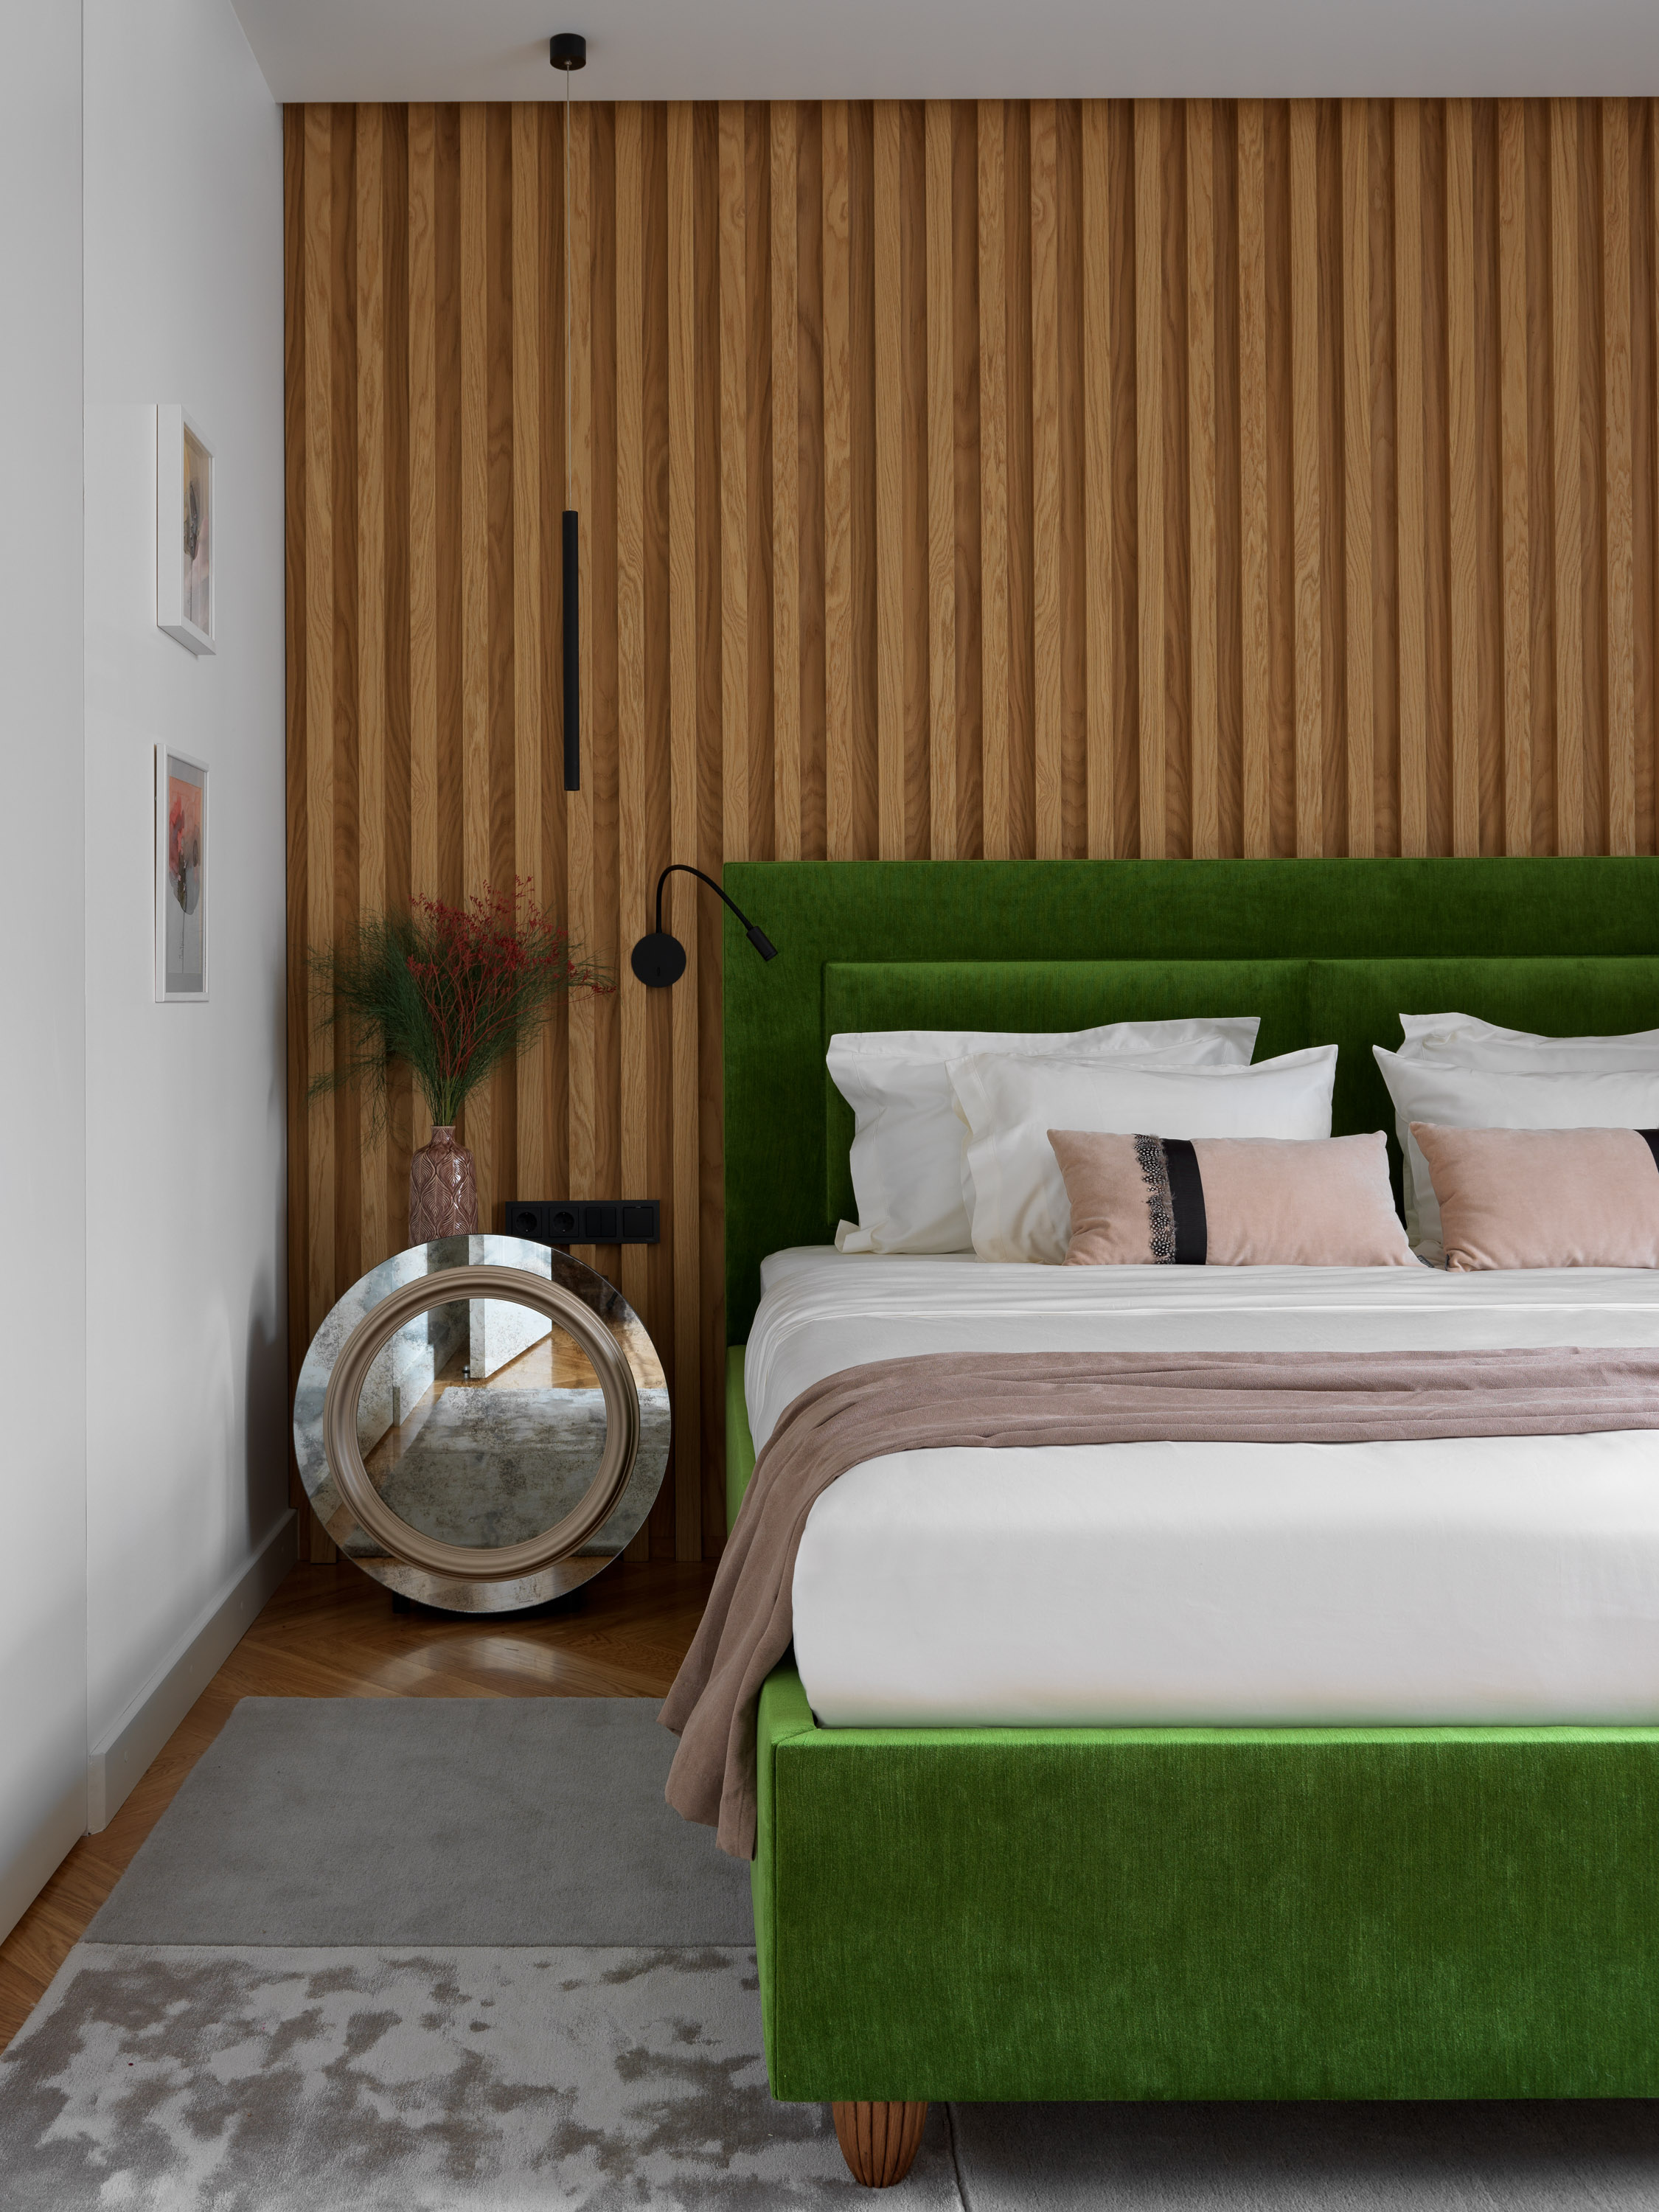 Дизайн спальни с деревянной отделкой